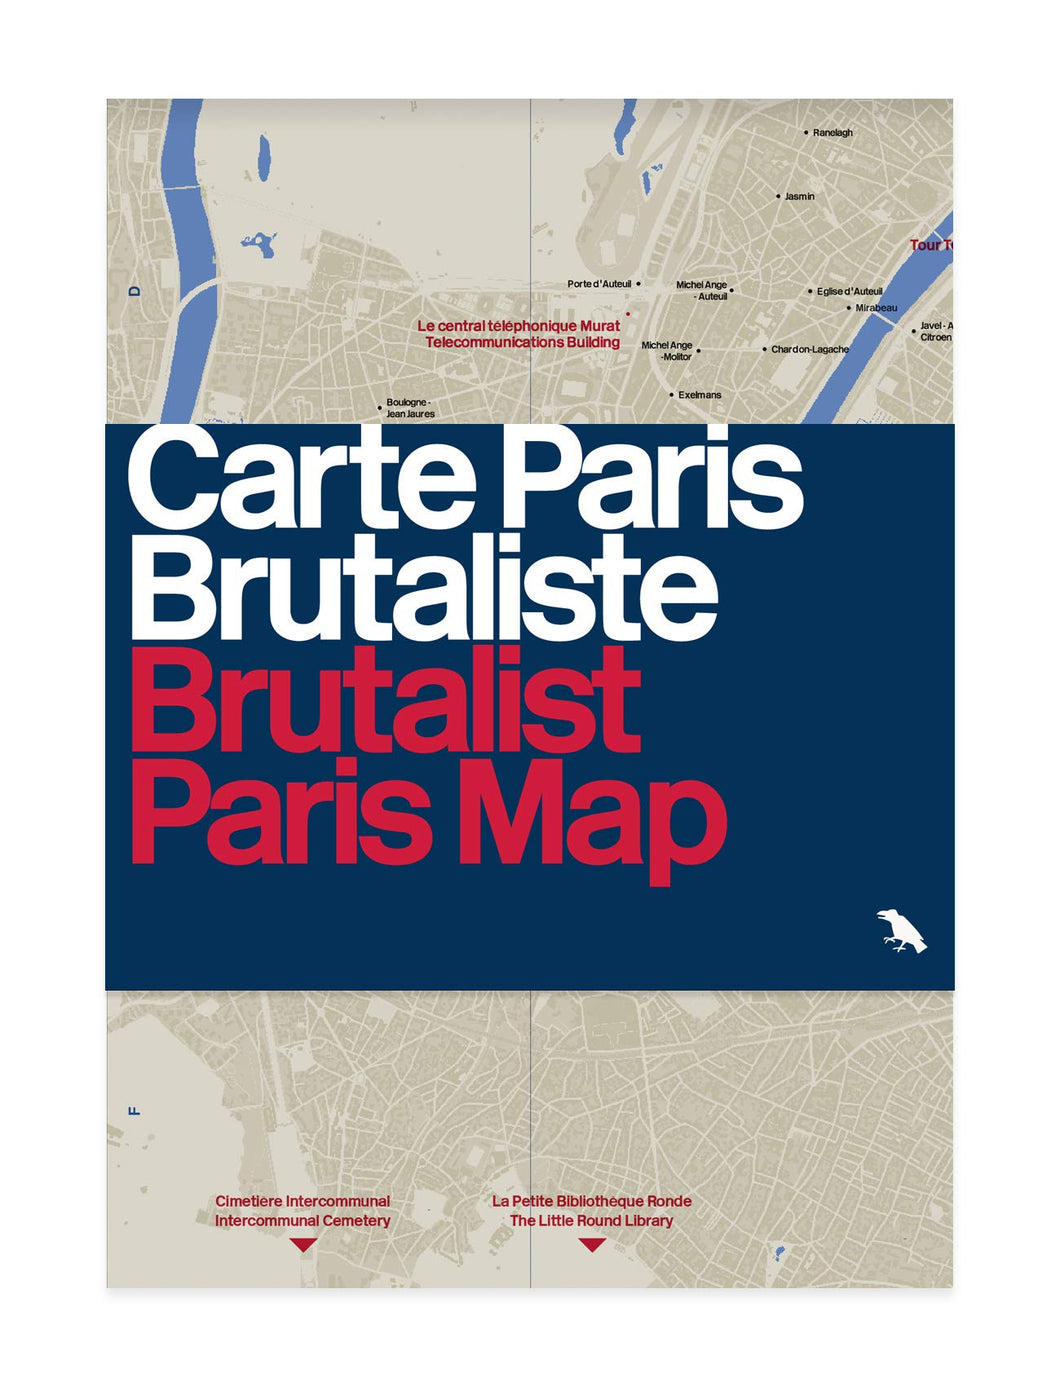 Map - Brutalist Paris